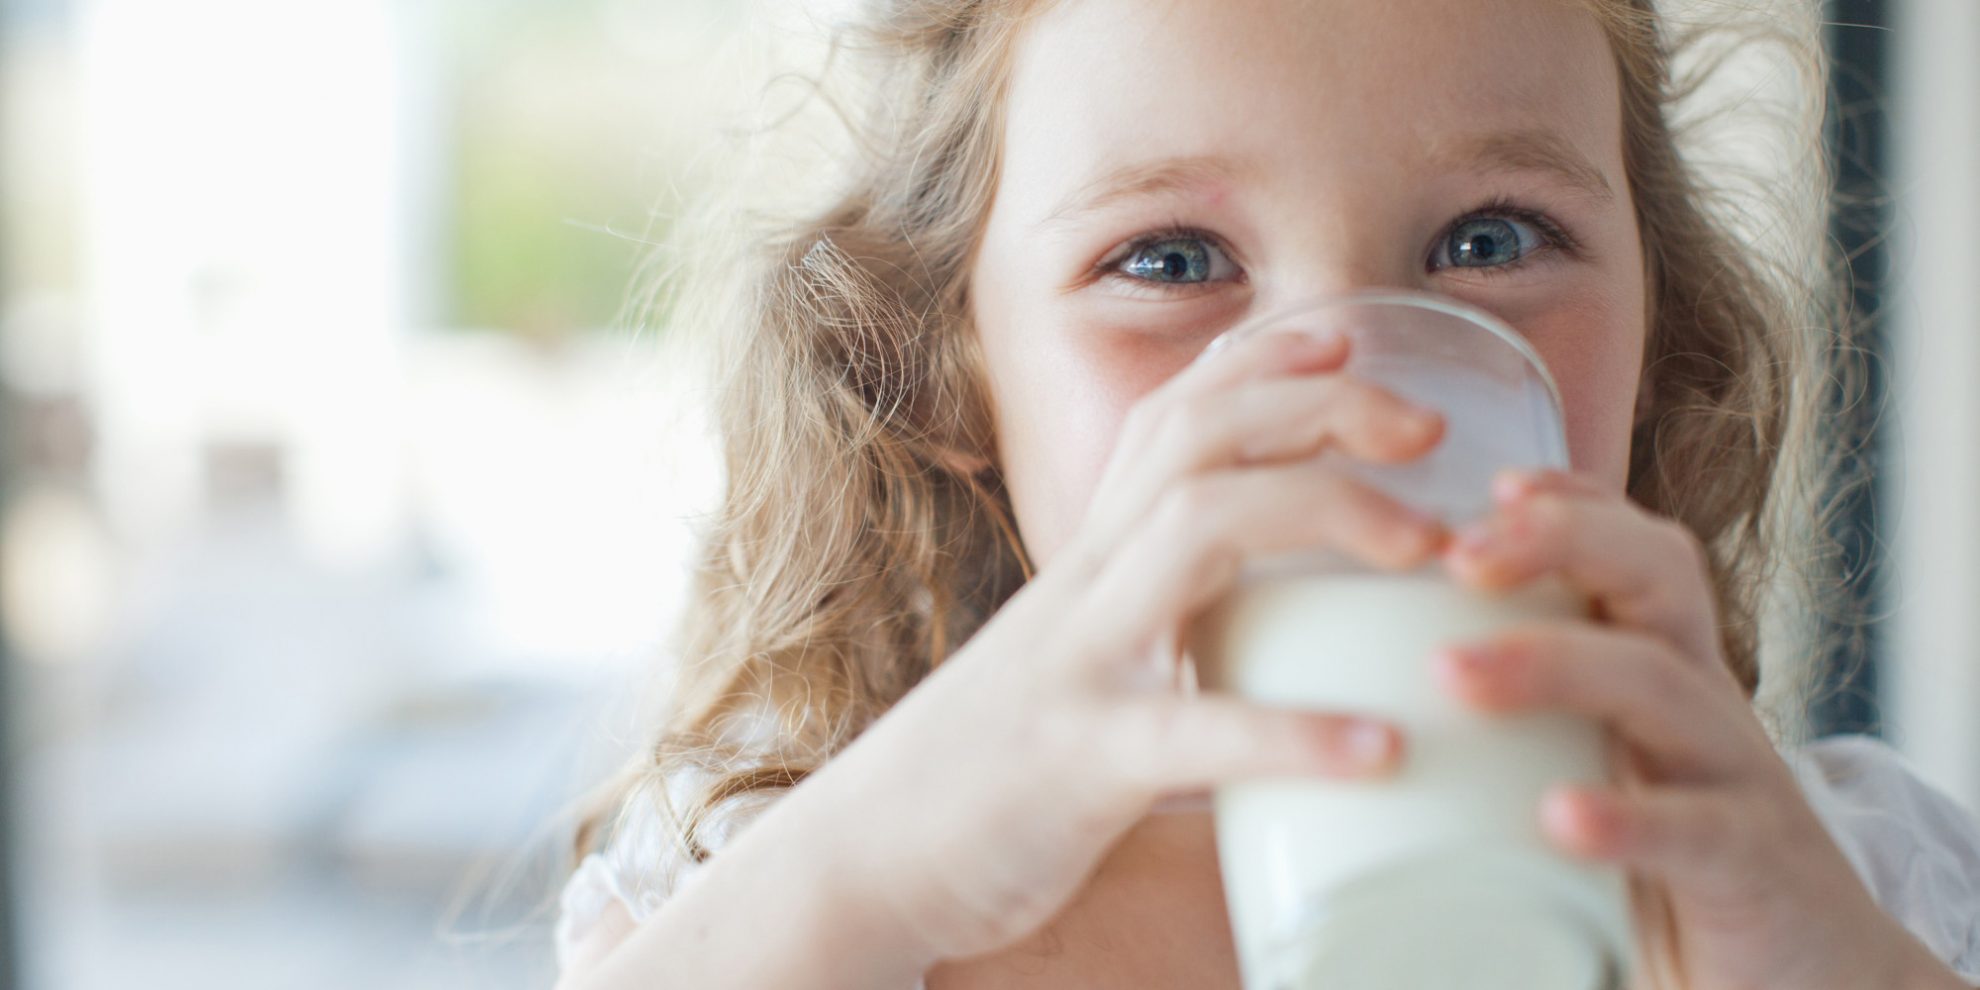 Gyventojai sunerimę – kas atsitiko pienui, kefyrui, kodėl į juos pradėjo dėti cukrų? Tokius klausimus pastaruoju metu išgirsta Nacionalinio maisto ir veterinarijos rizikos vertinimo instituto specialistai.